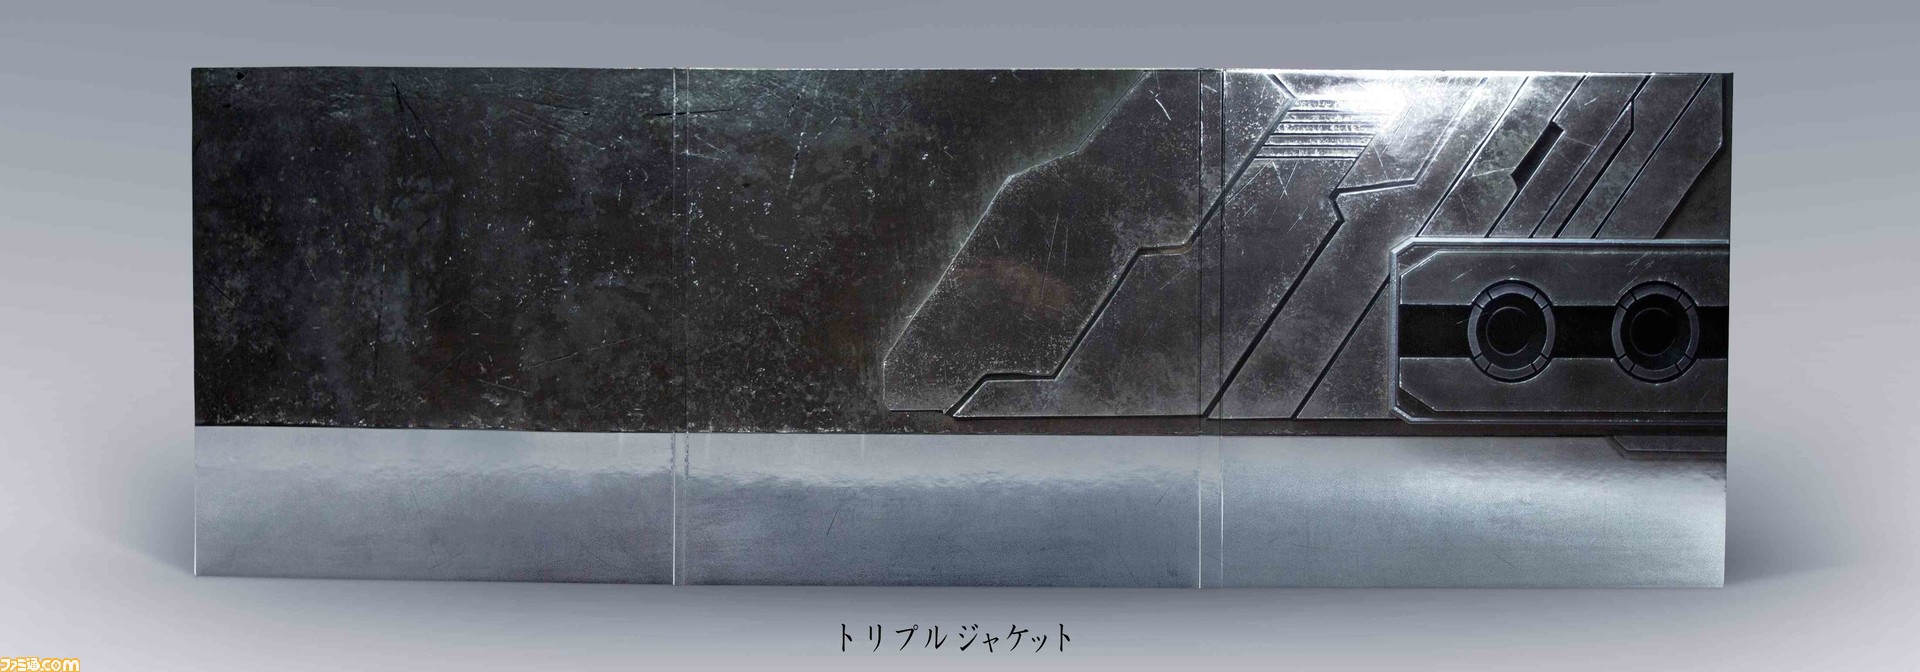 《最终幻想7》黑胶唱片1月31日发售 收录双版本20首曲目